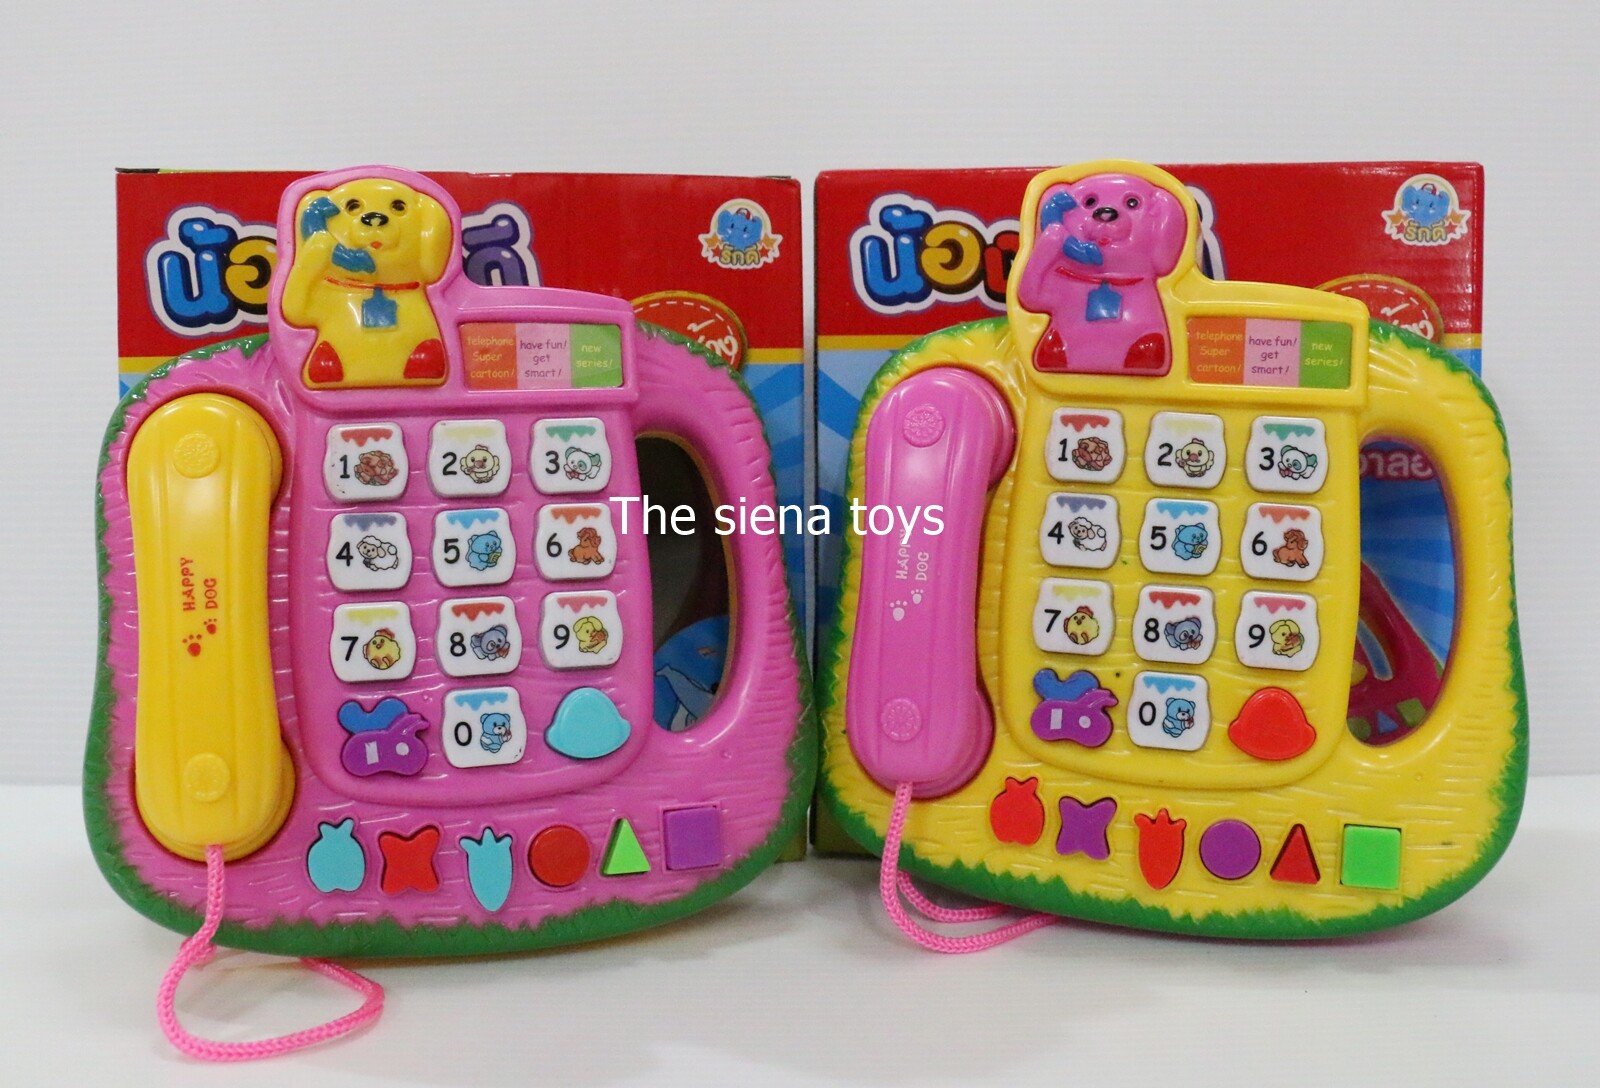 โทรศัพท์เด็กเล่น โทรศัพท์ของเล่น มีเพลงช้างภาษาไทย (สินค้าถ่ายจากของจริง100%)มีคลิปรีวิวสินค้าจริง